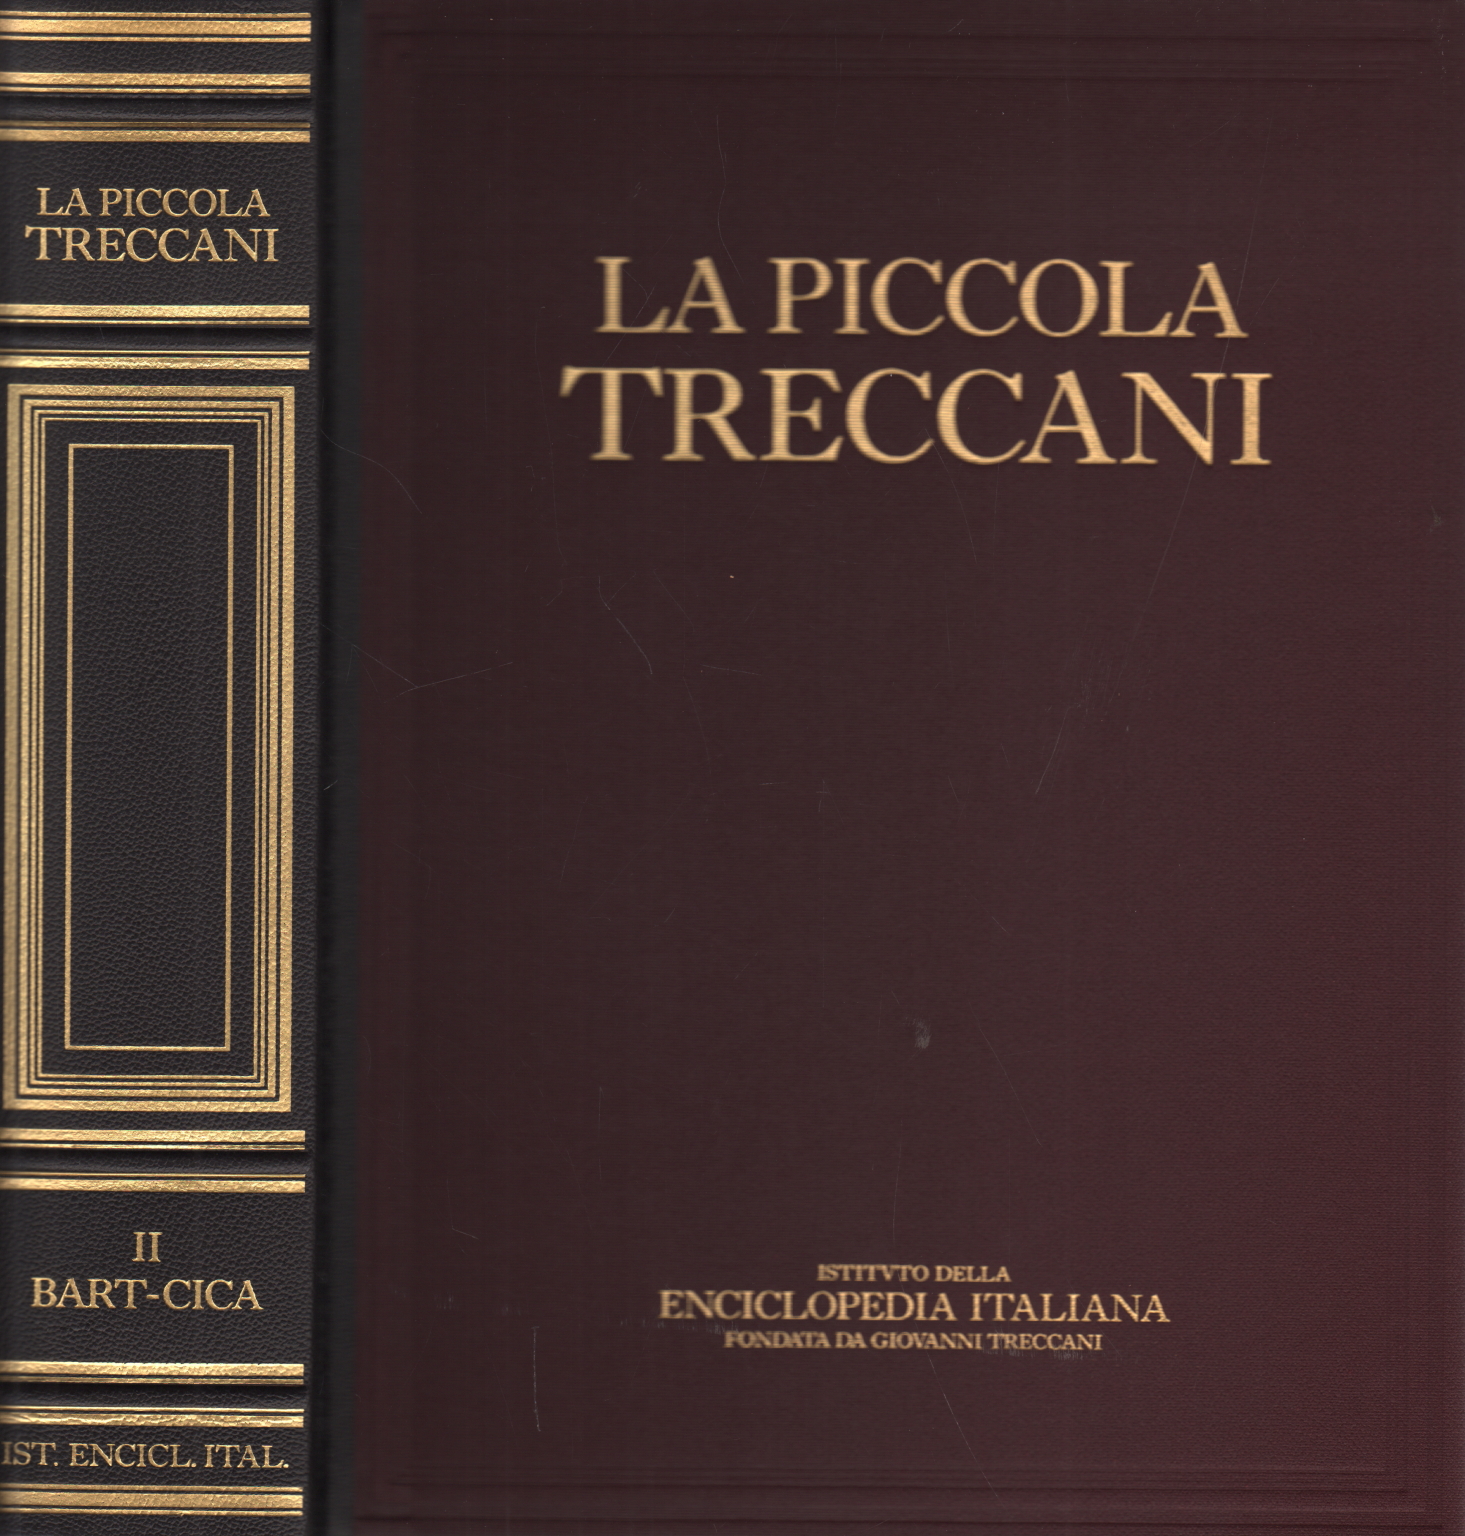 Der kleine Treccani II Bart-Cica